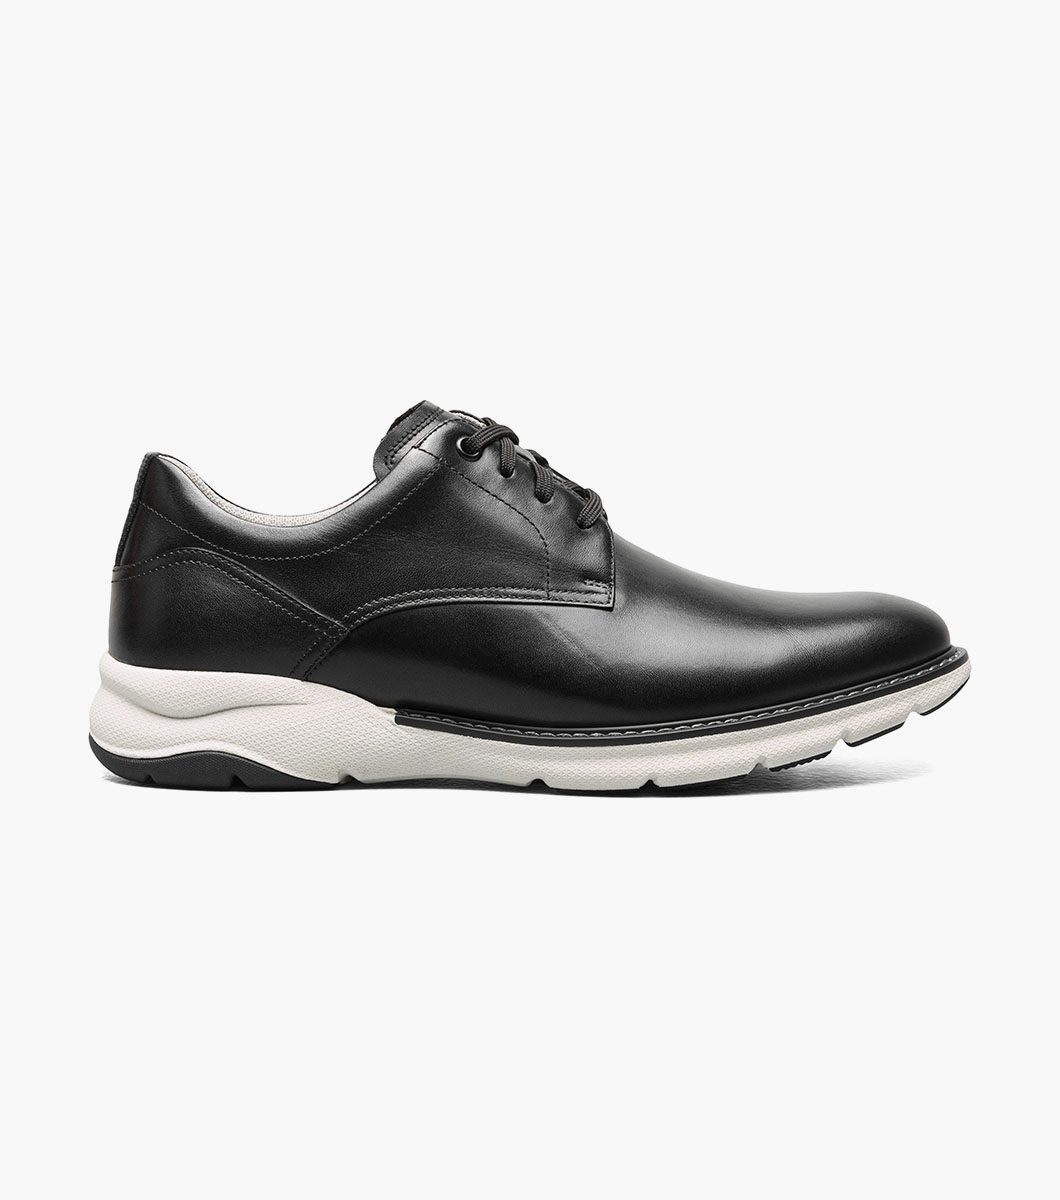 Frenzi Plain Toe Oxford Men’s Dress Shoes | Florsheim.com